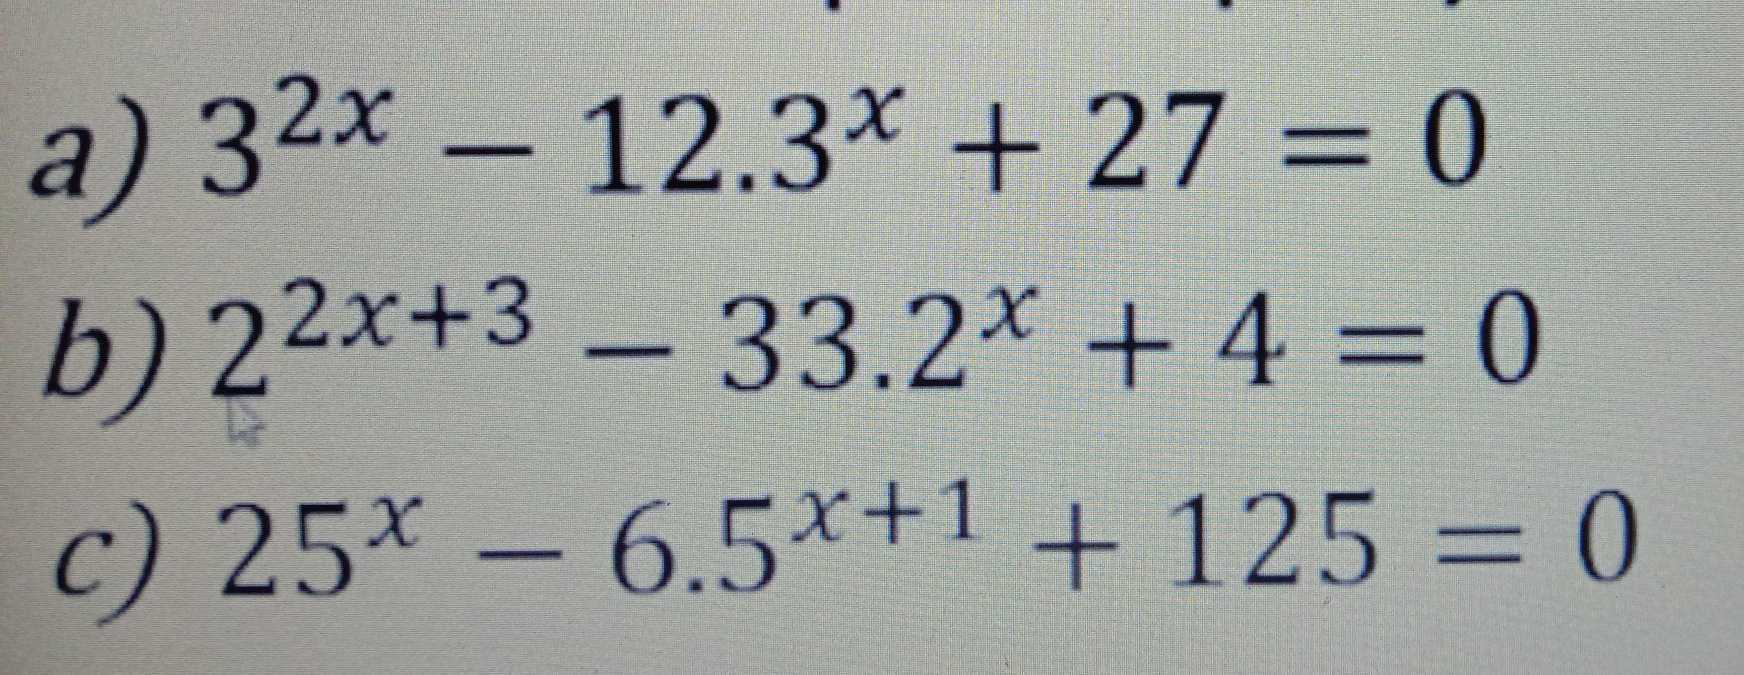 a) 32x – 12.3* + 27 = 0 b) 22x+3 – 33.2x + 4 = 0 c) 25* – 6.5*+1 + 125 = 0 